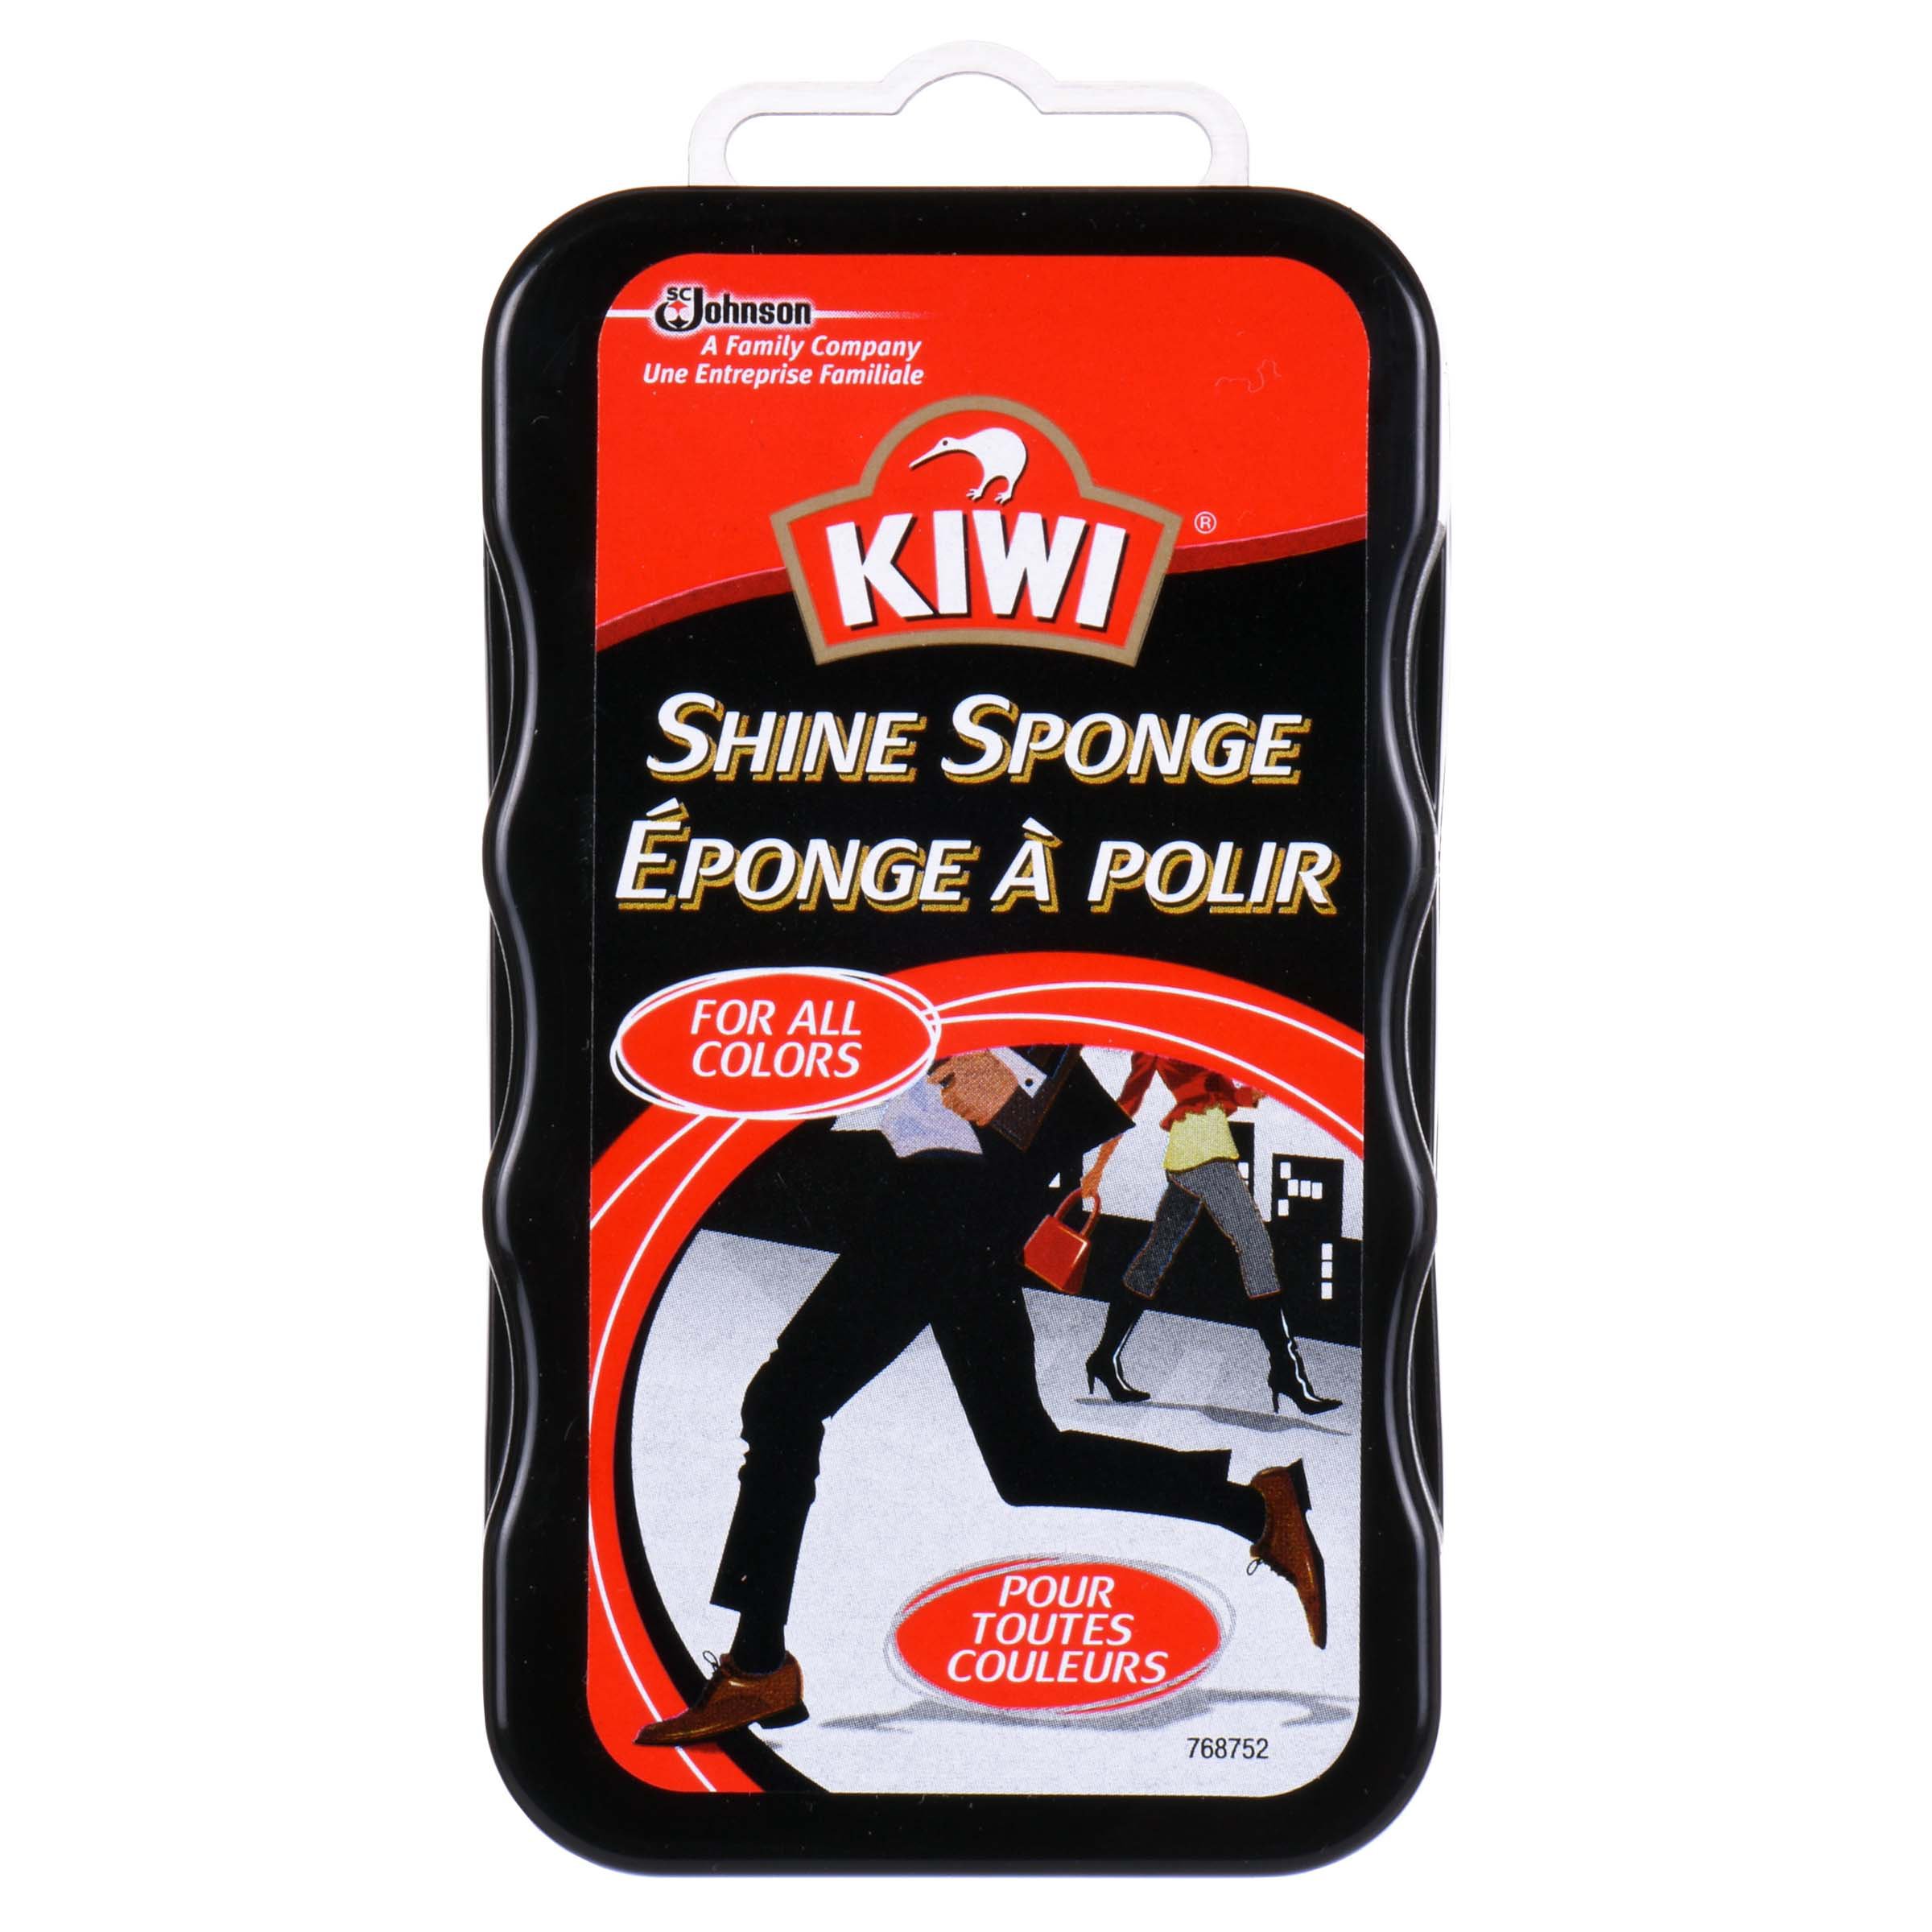 Kiwi Shine Sponge - Shop Shoe Polish at H-E-B